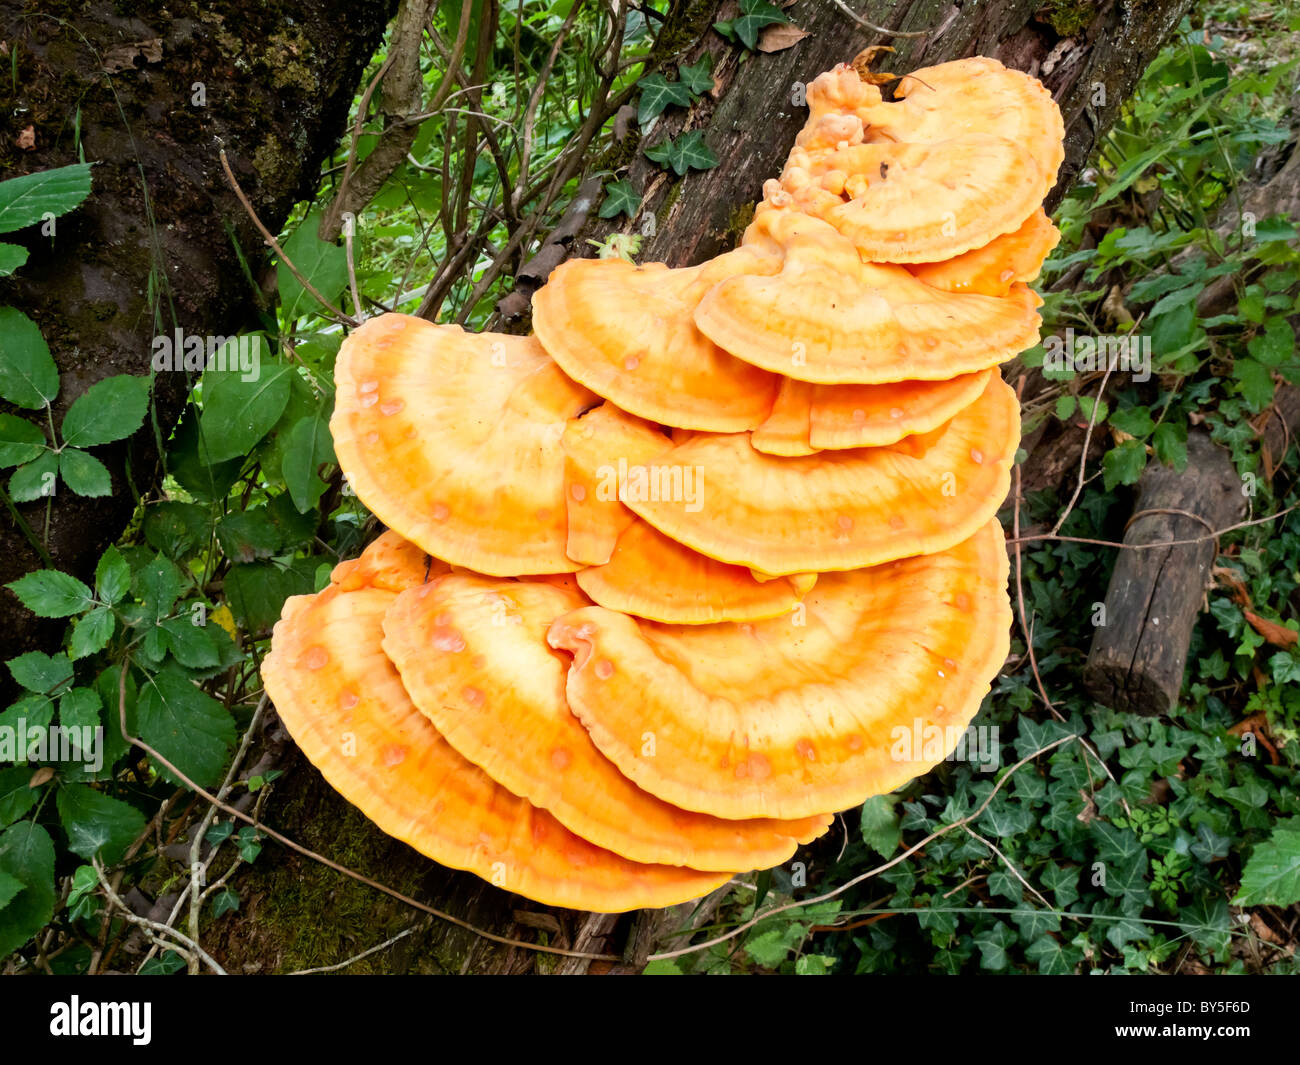 La staffa o mensola funghi di phylum Basidiomycota che mostra caratteristiche di corpi fruttiferi chiamato conks cresce su un tronco di albero Foto Stock